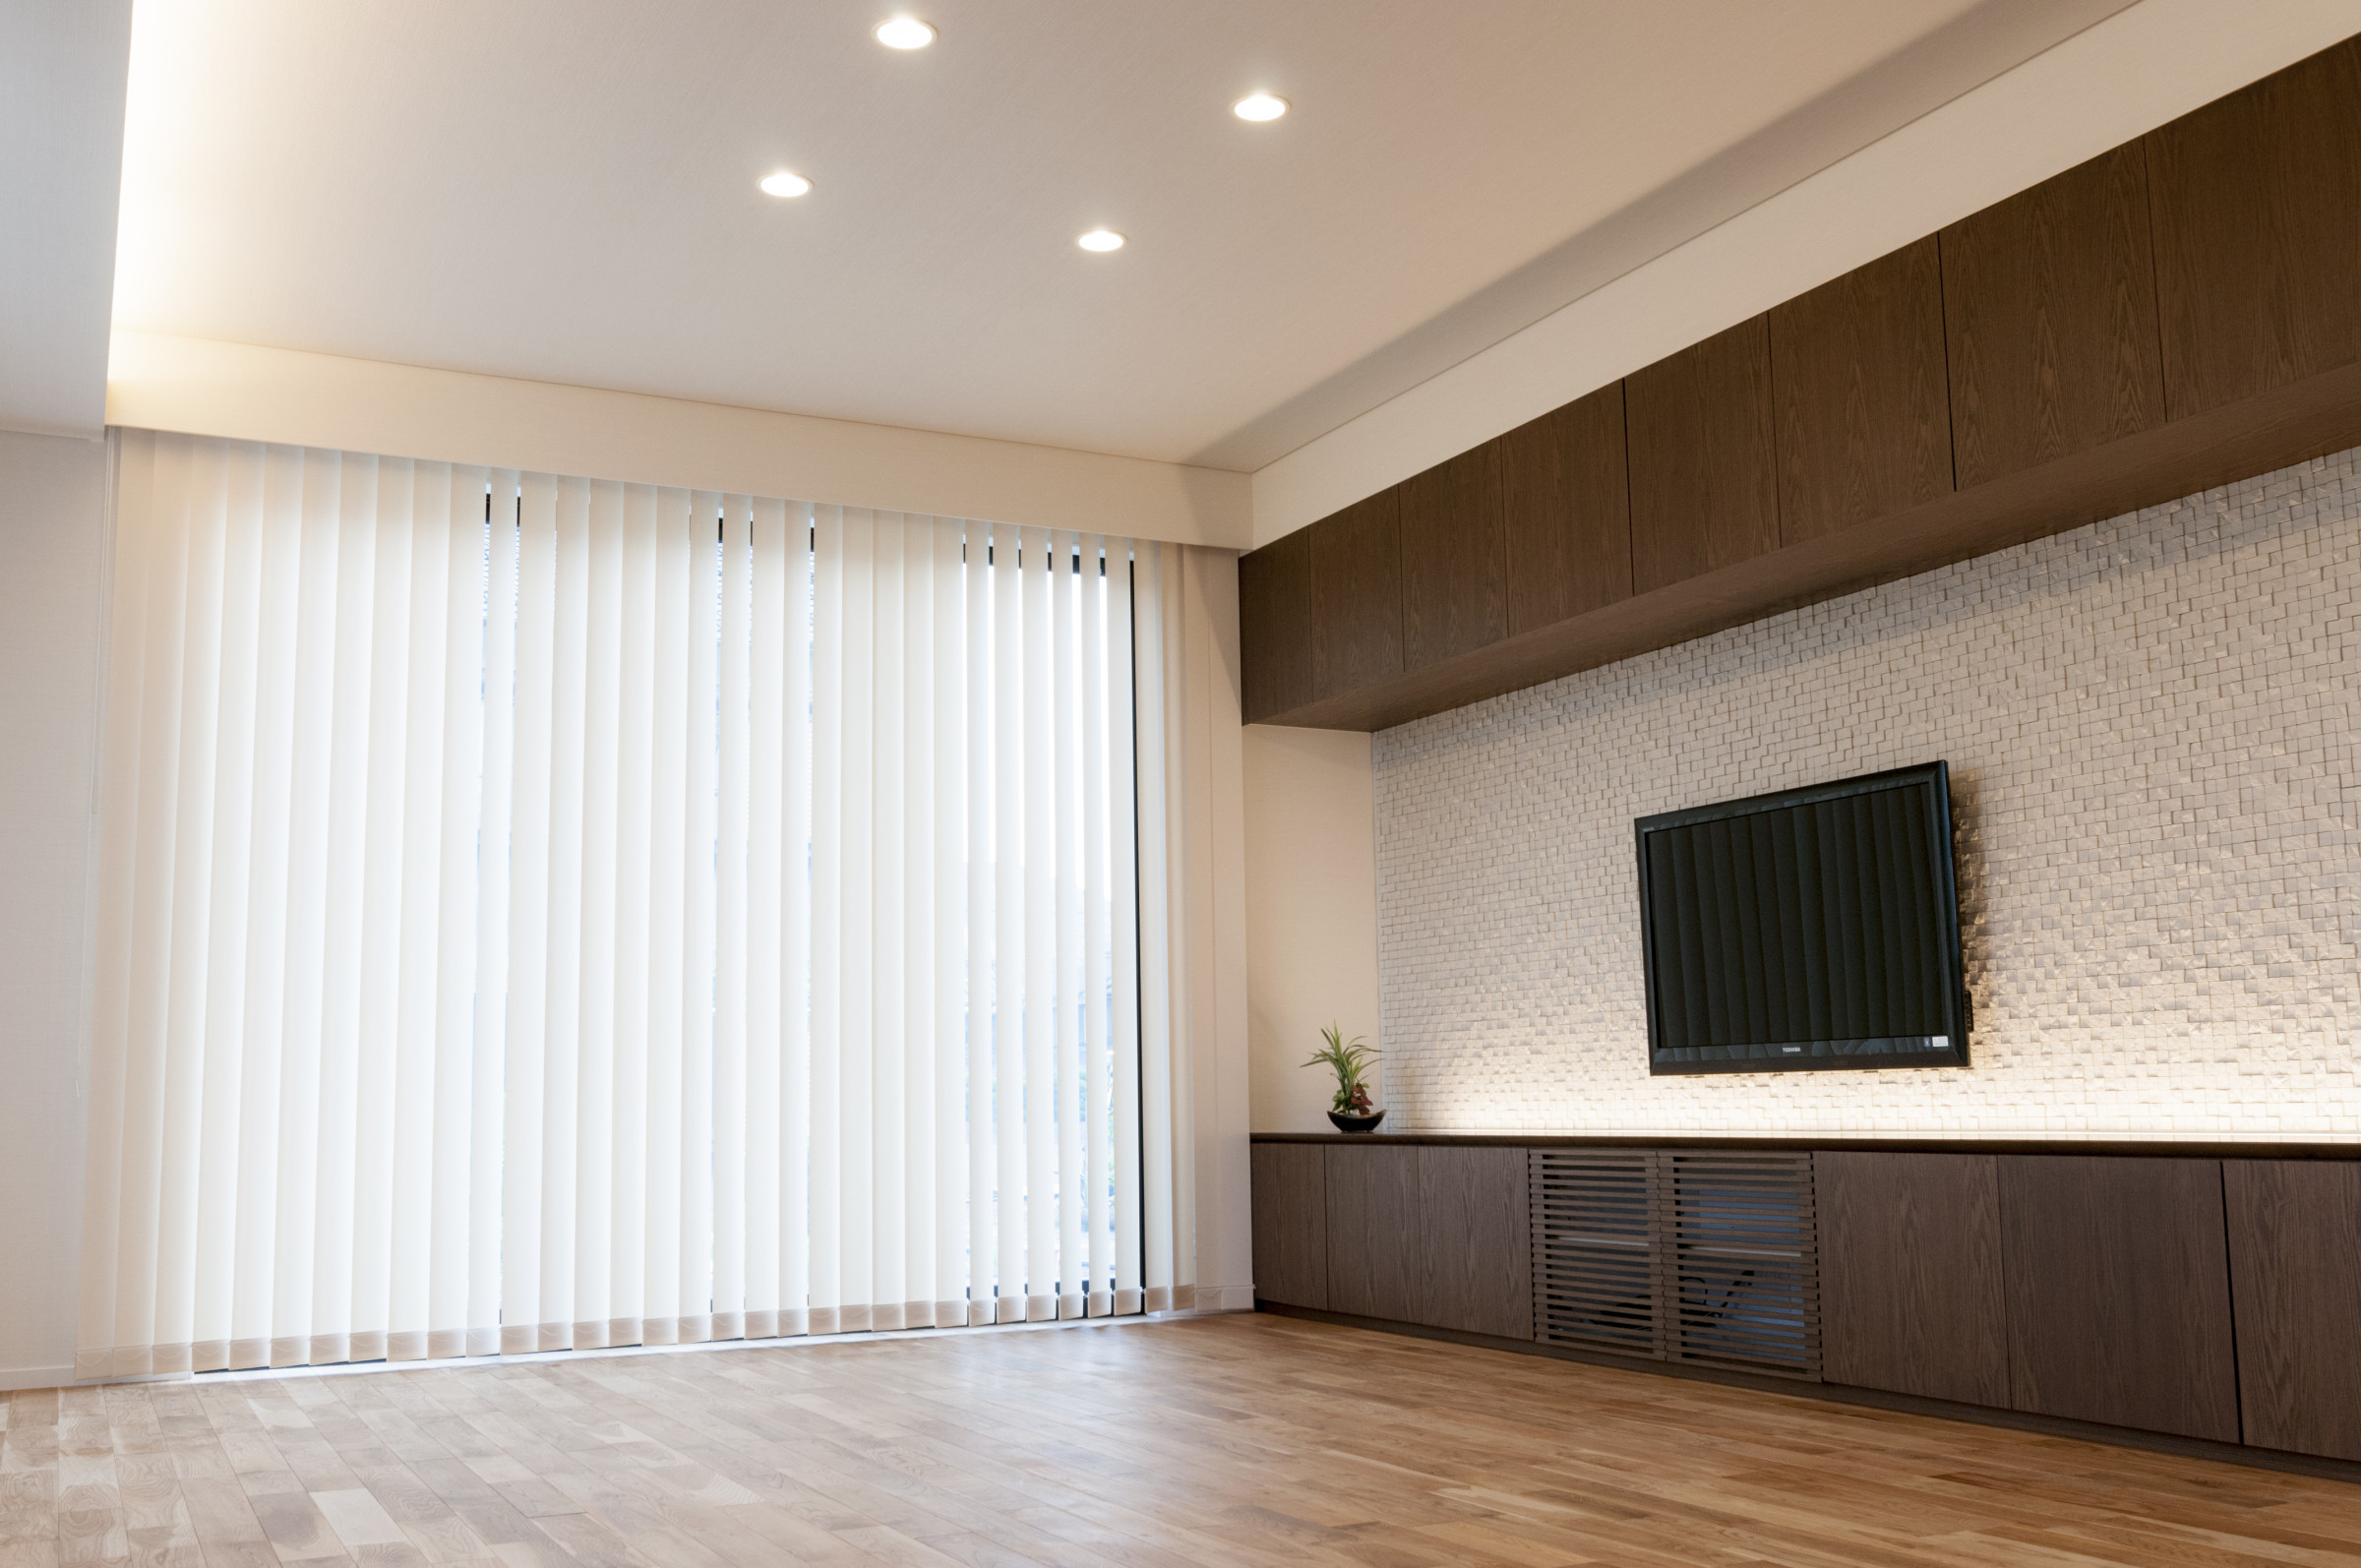 デザインはシンプルに照明やお客様が配置される家具が映えるように設計する事をこころがけています